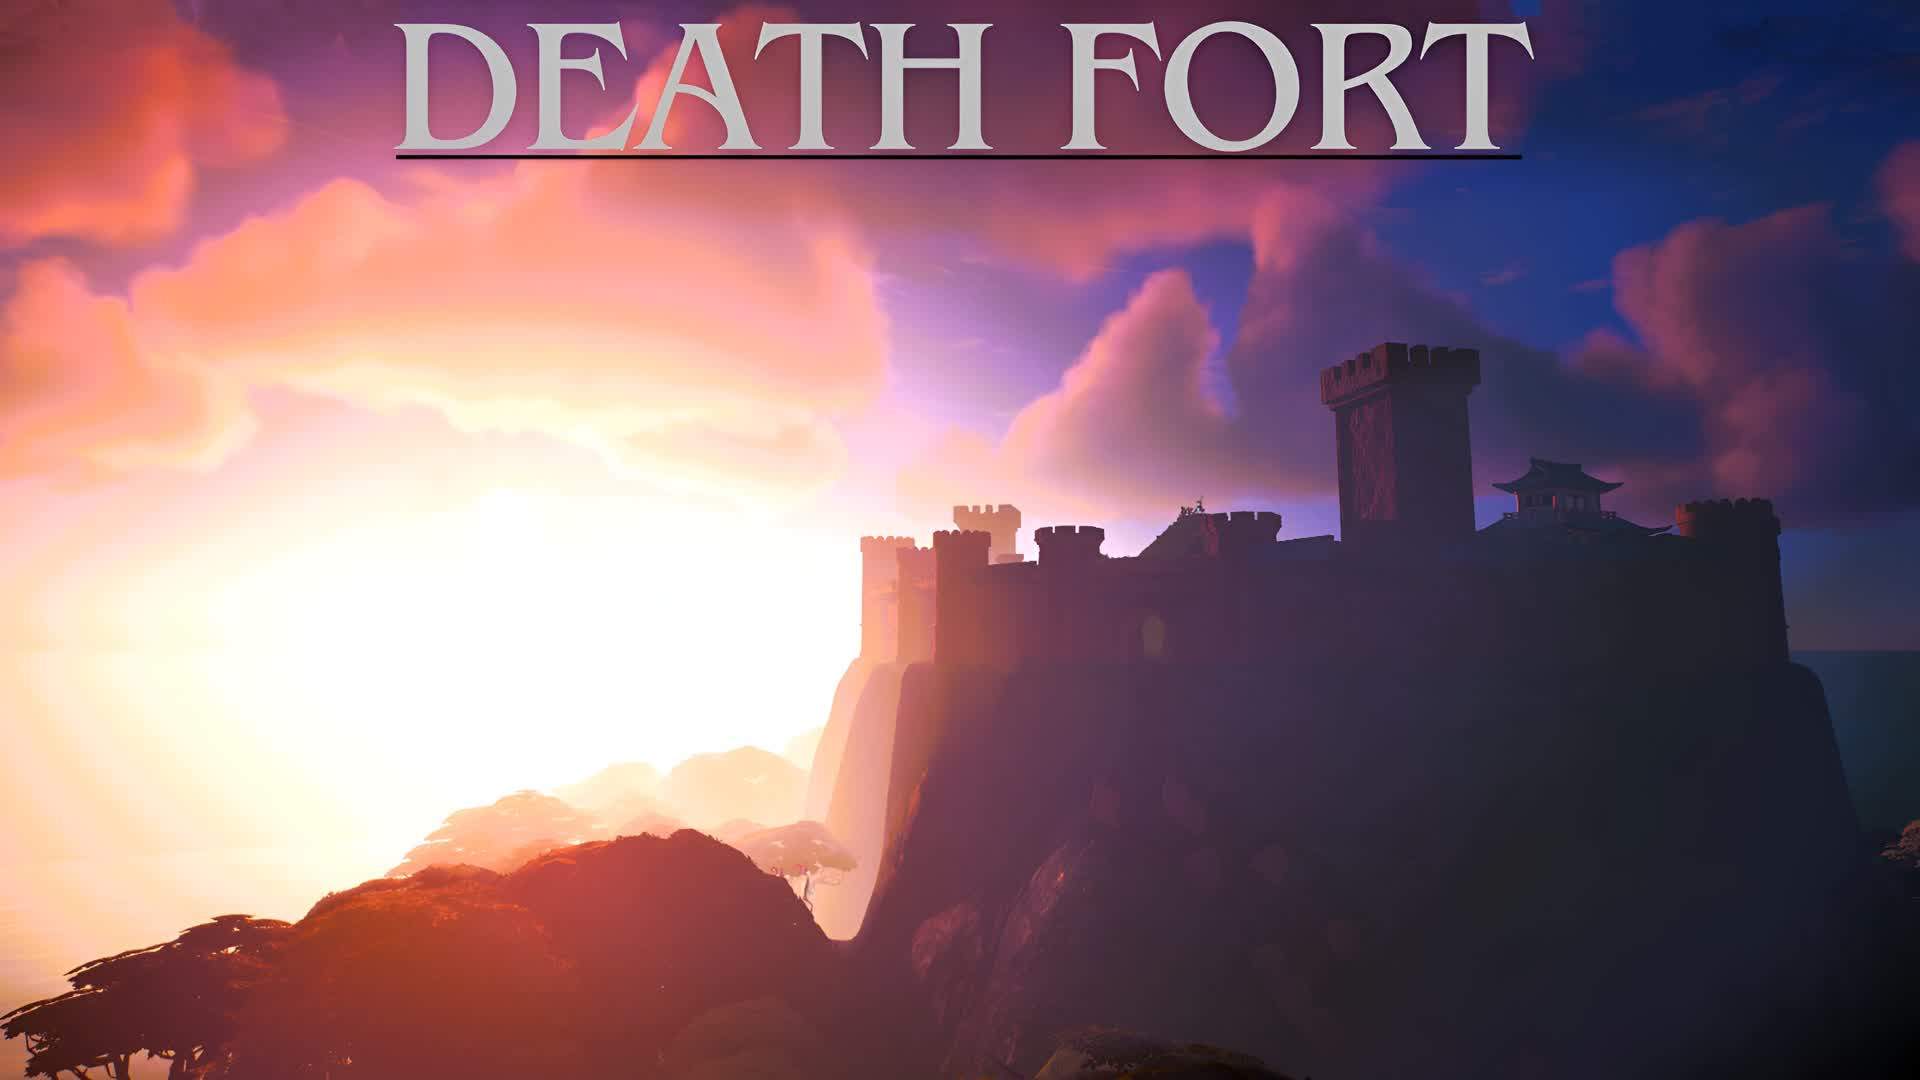 DeathFort